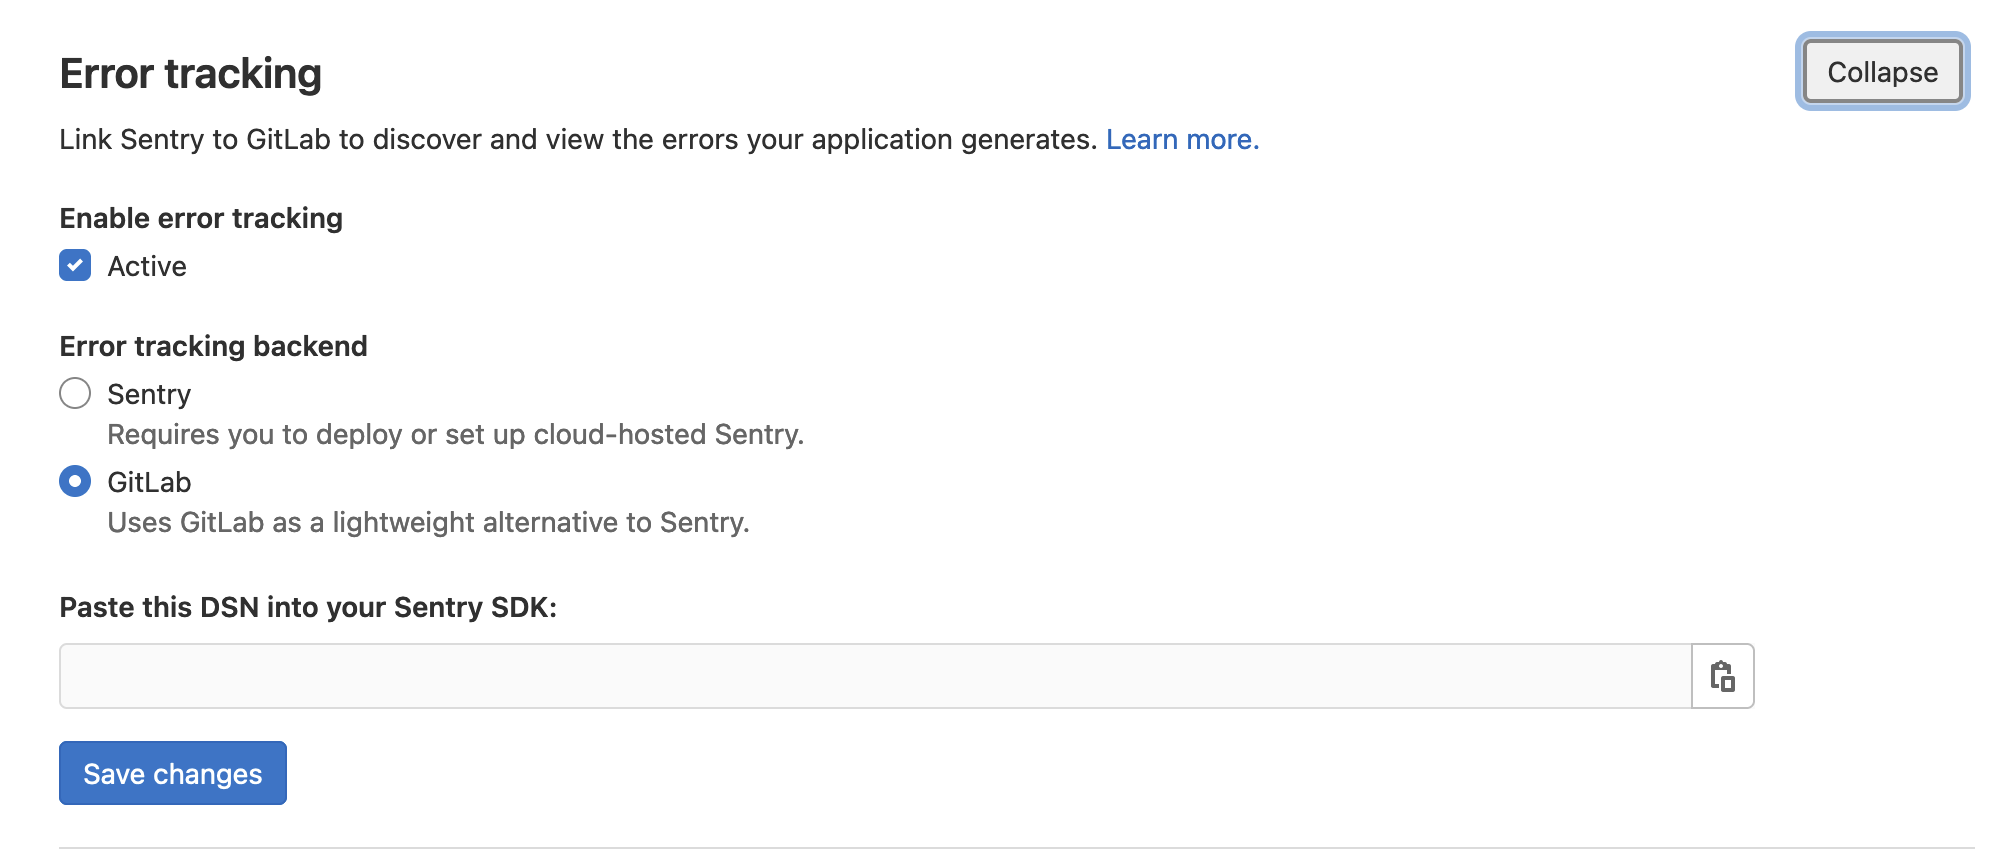 极狐GitLab 内置集成错误追踪功能，无需 Sentry 实例